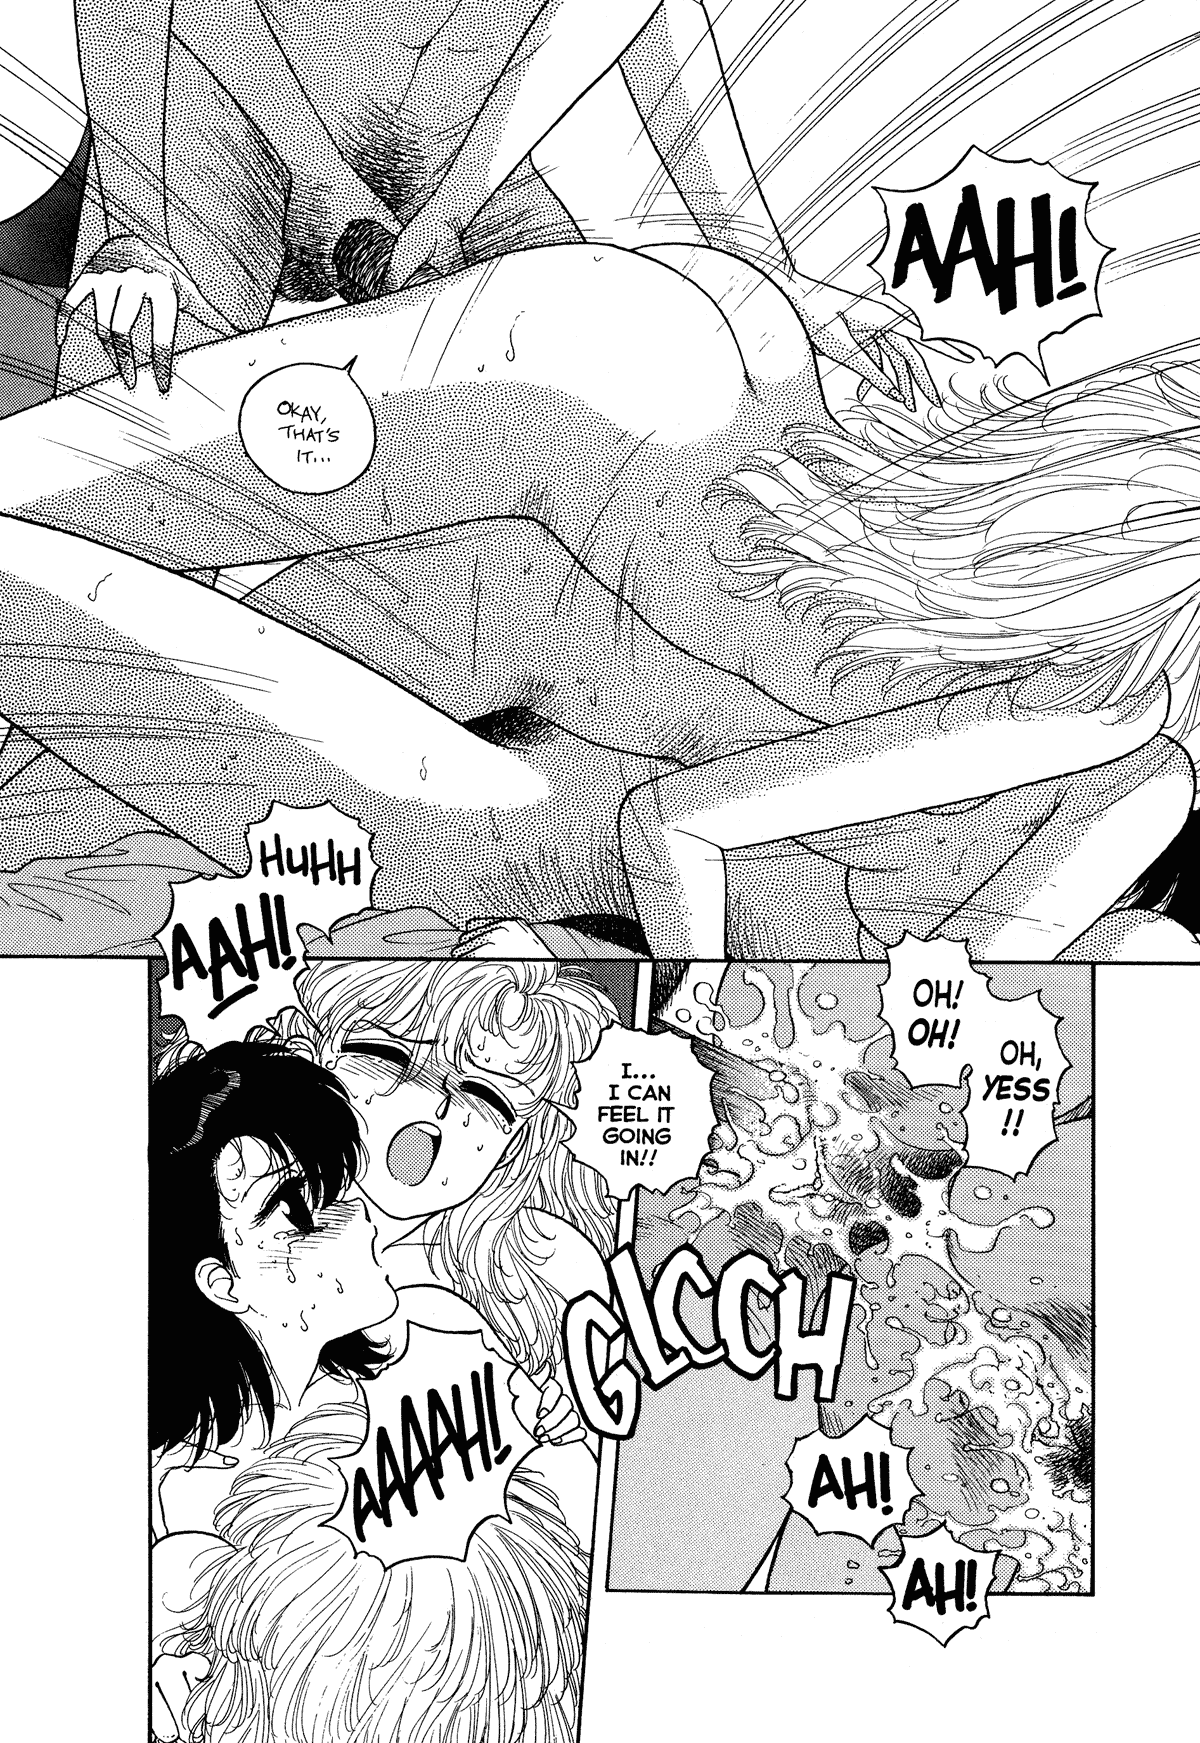 extreme hentai manga